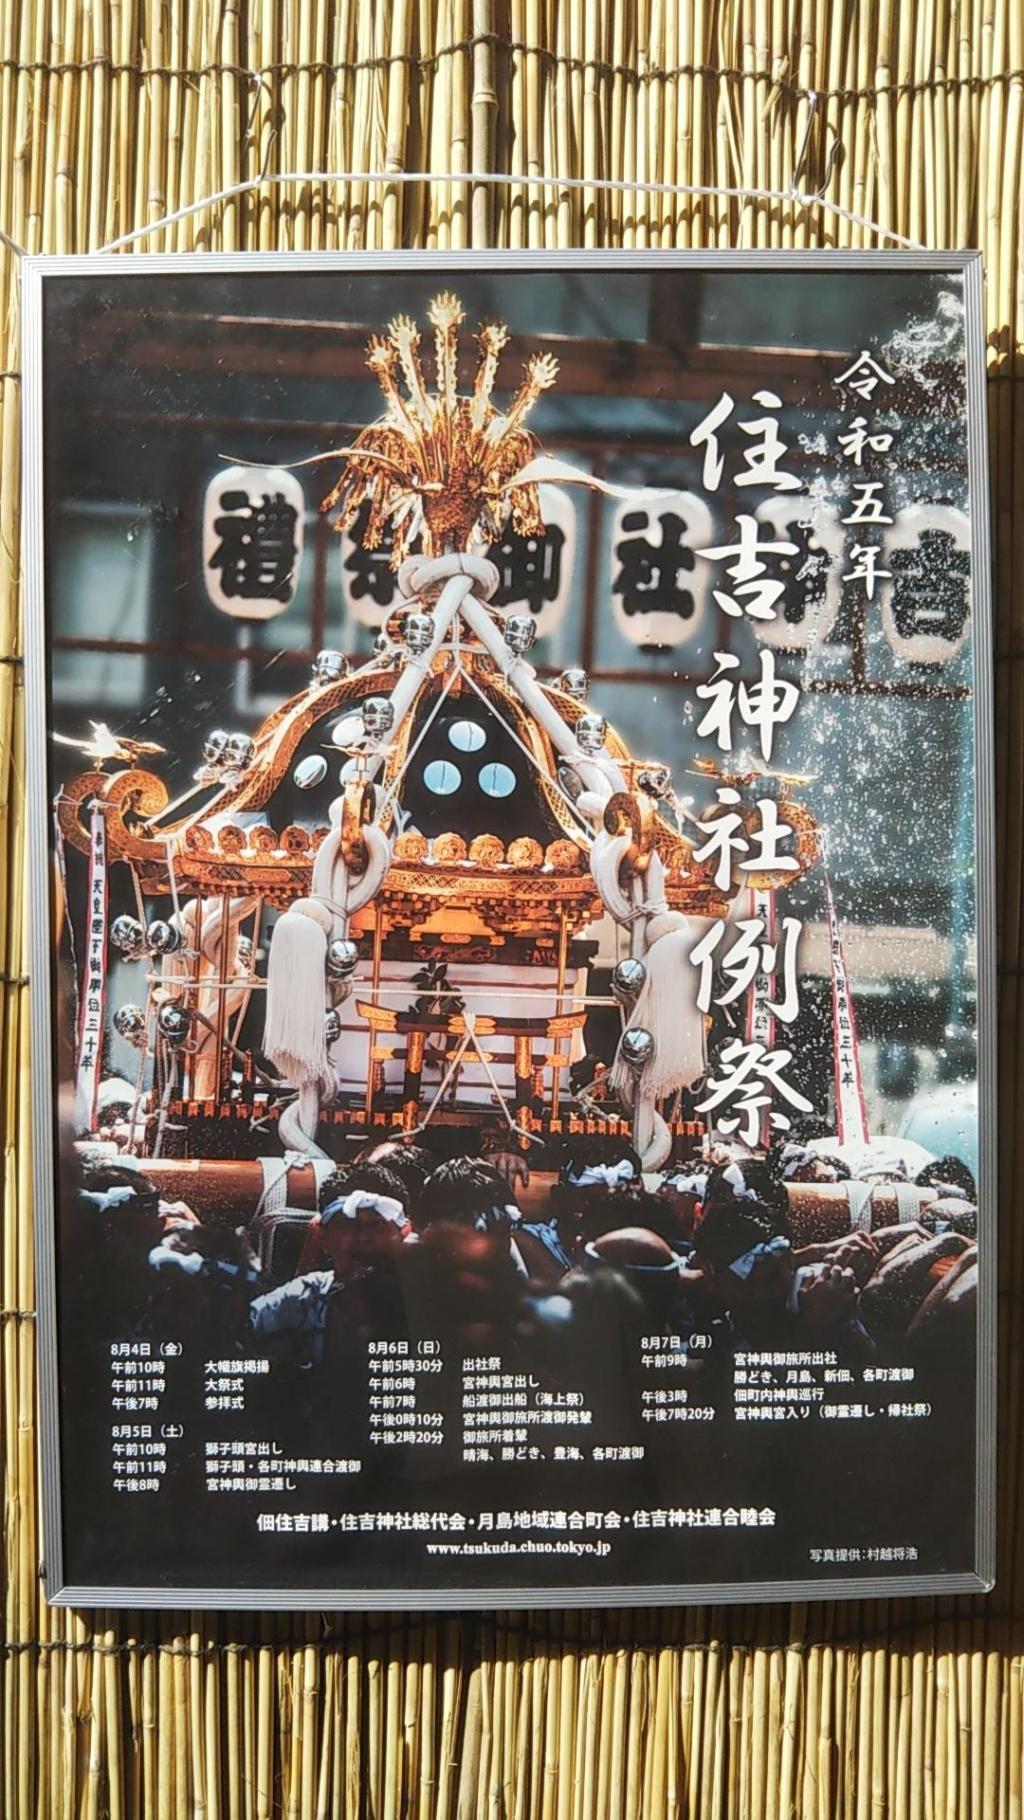 佃、住吉神社の大祭
8月4日の大幟の旗揚げで、7日まで続く住吉神社の例祭がはじまります。